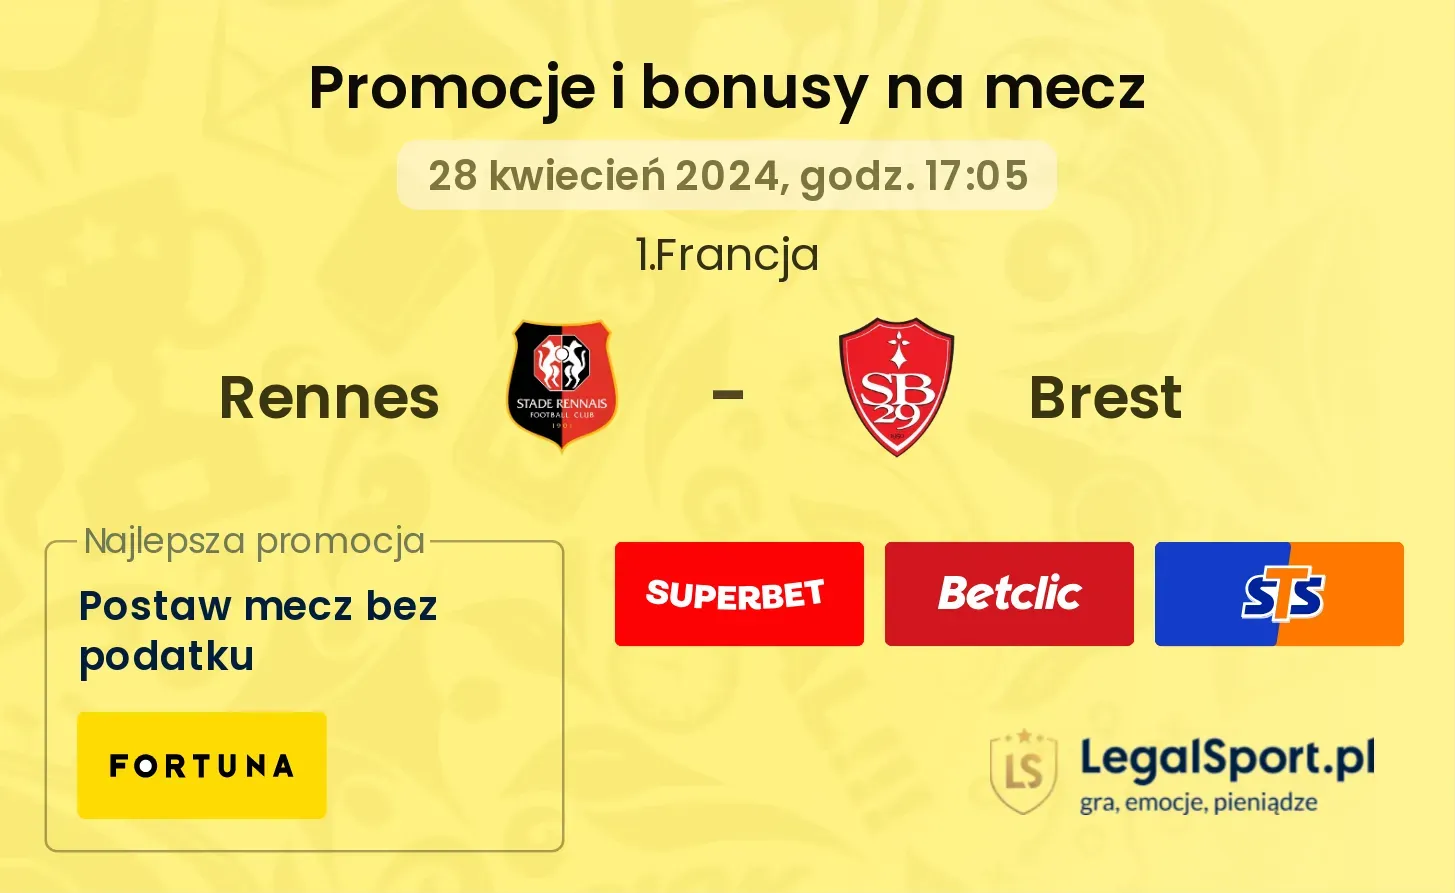 Rennes - Brest promocje bonusy na mecz